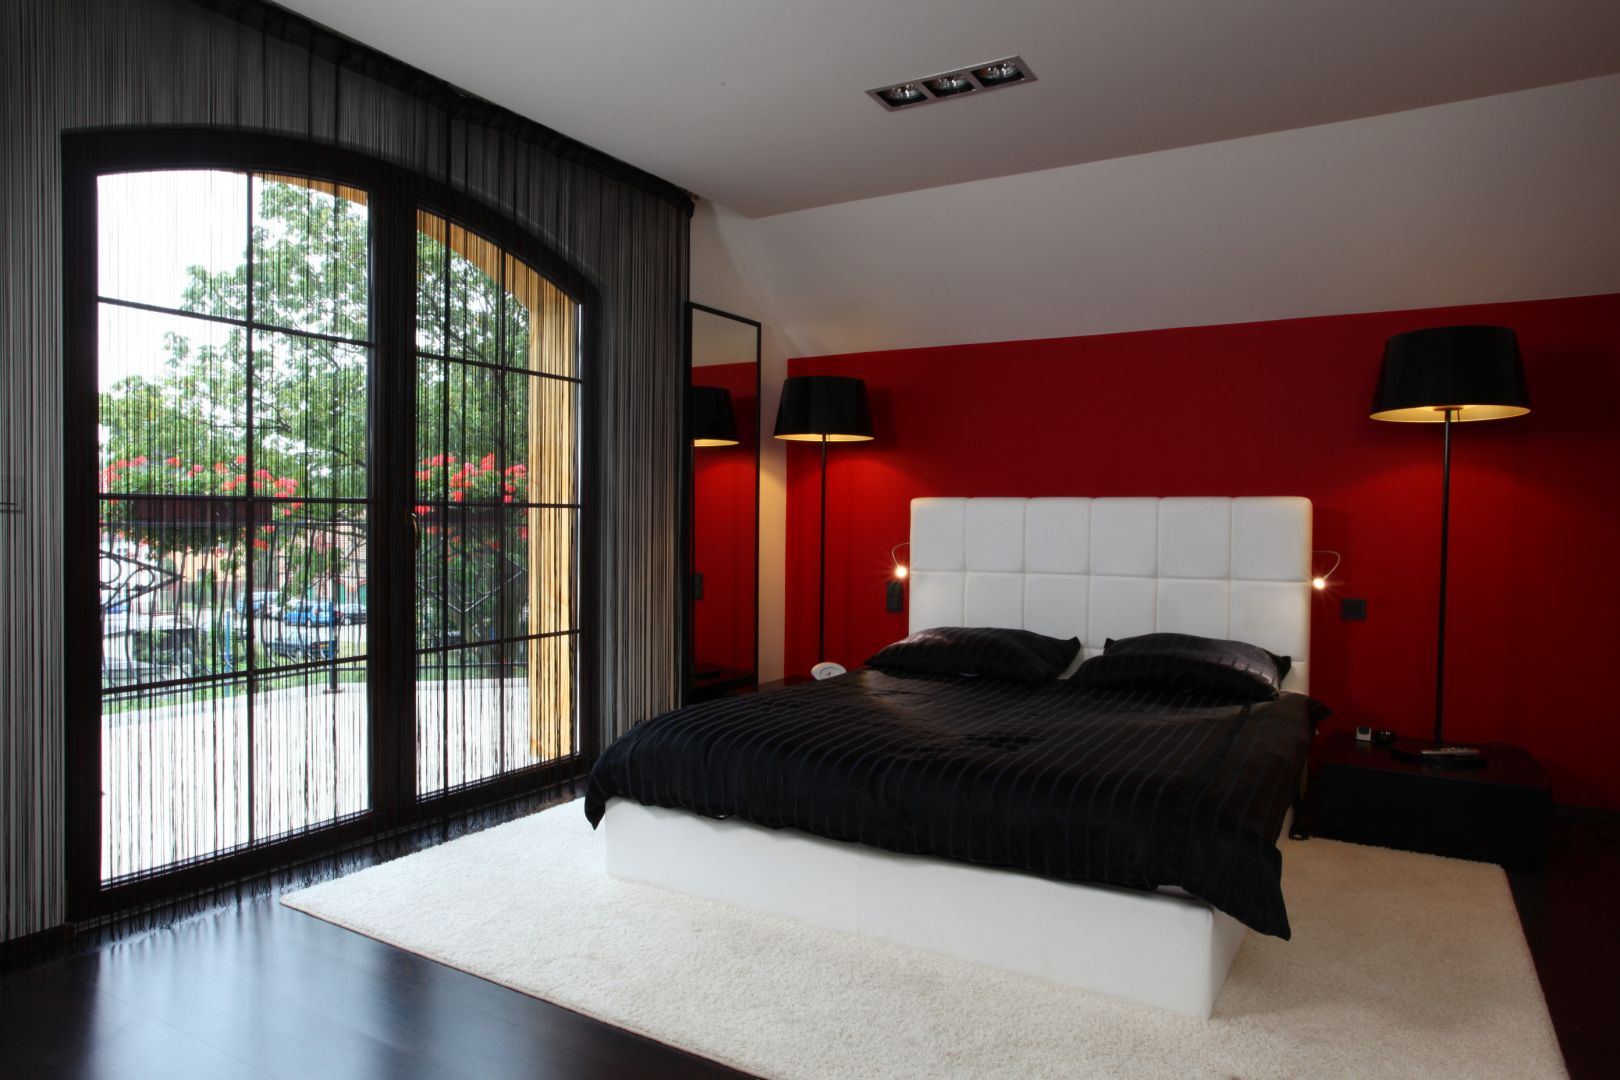 Biały zagłówek łóżka pięknie komponuje się z czerwoną ścianą. Projekt: Anna Kuk-Dutka. Fot. Tomasz Augustyn